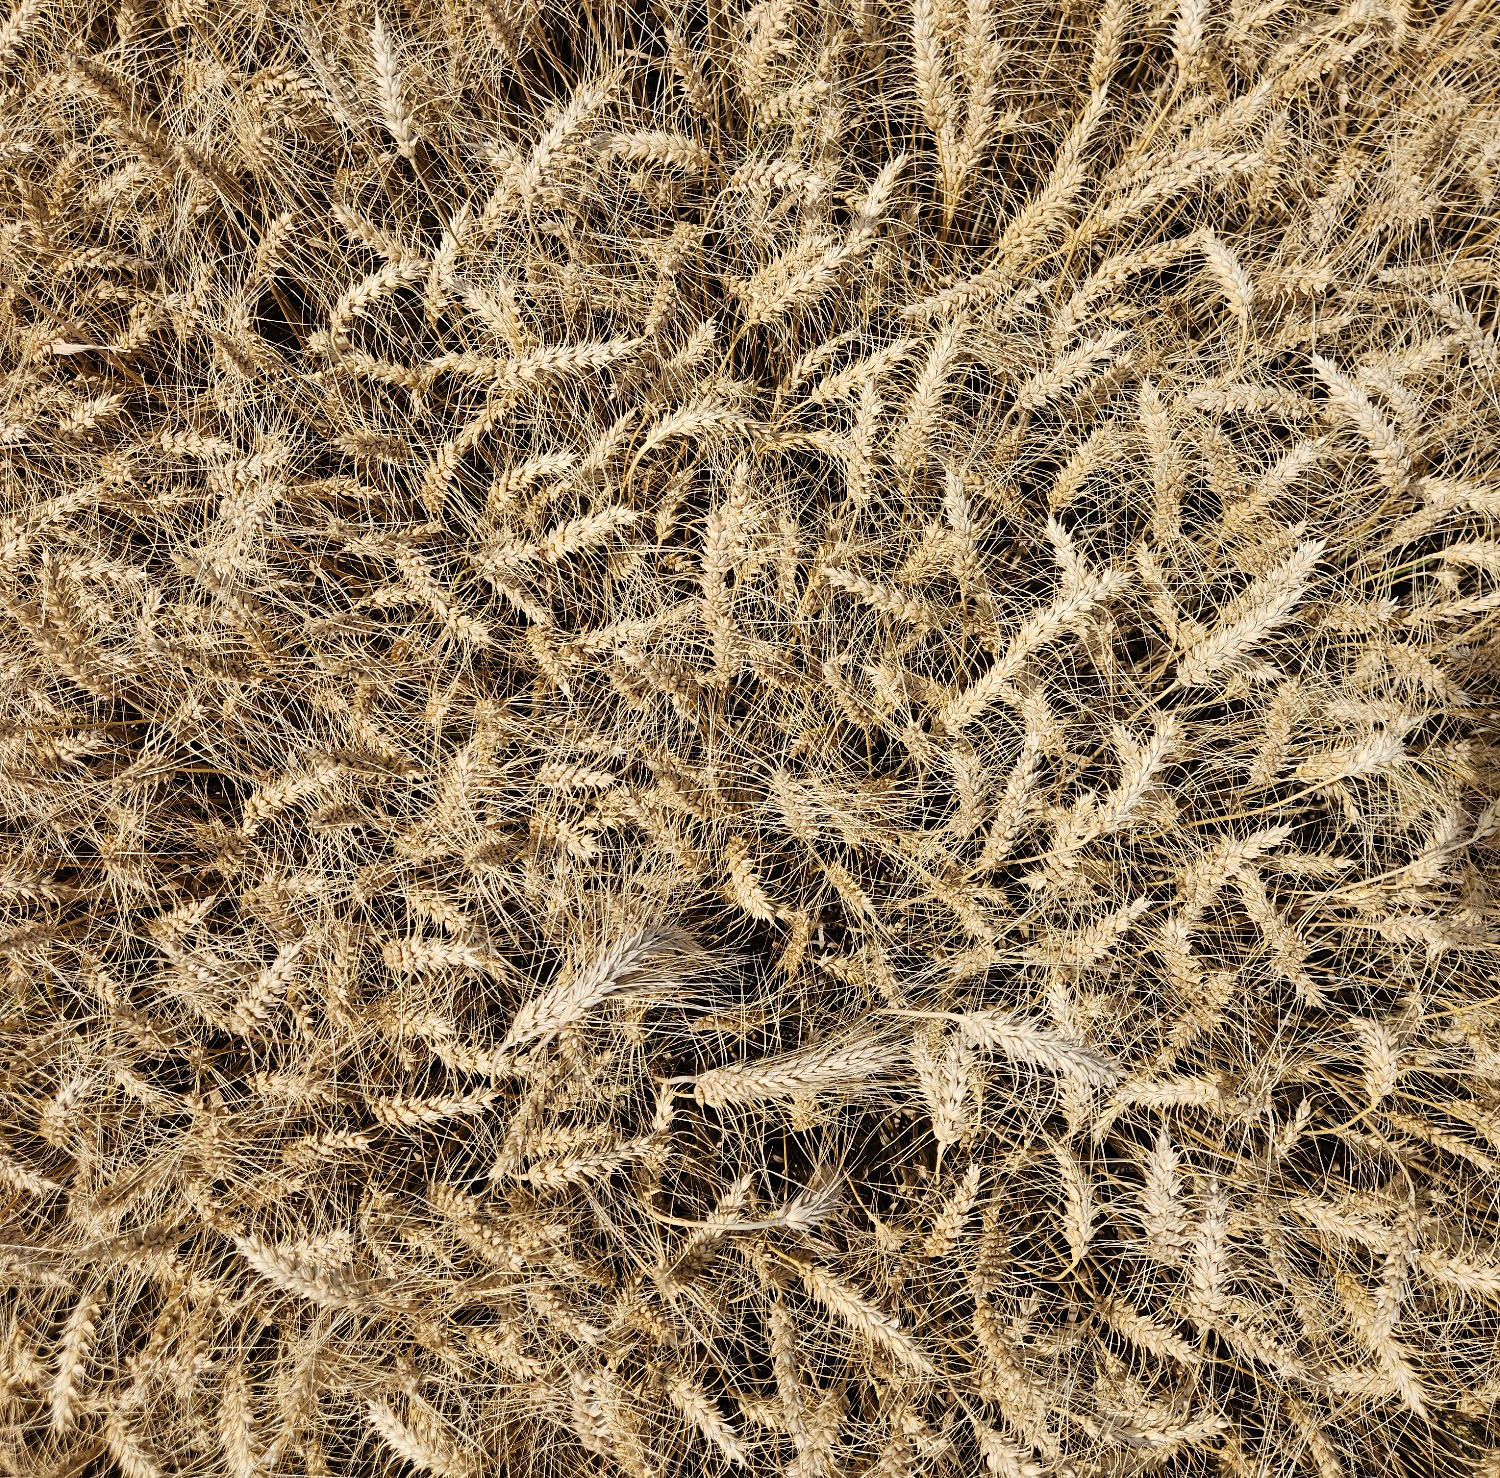 Closeup of wheat in a field.